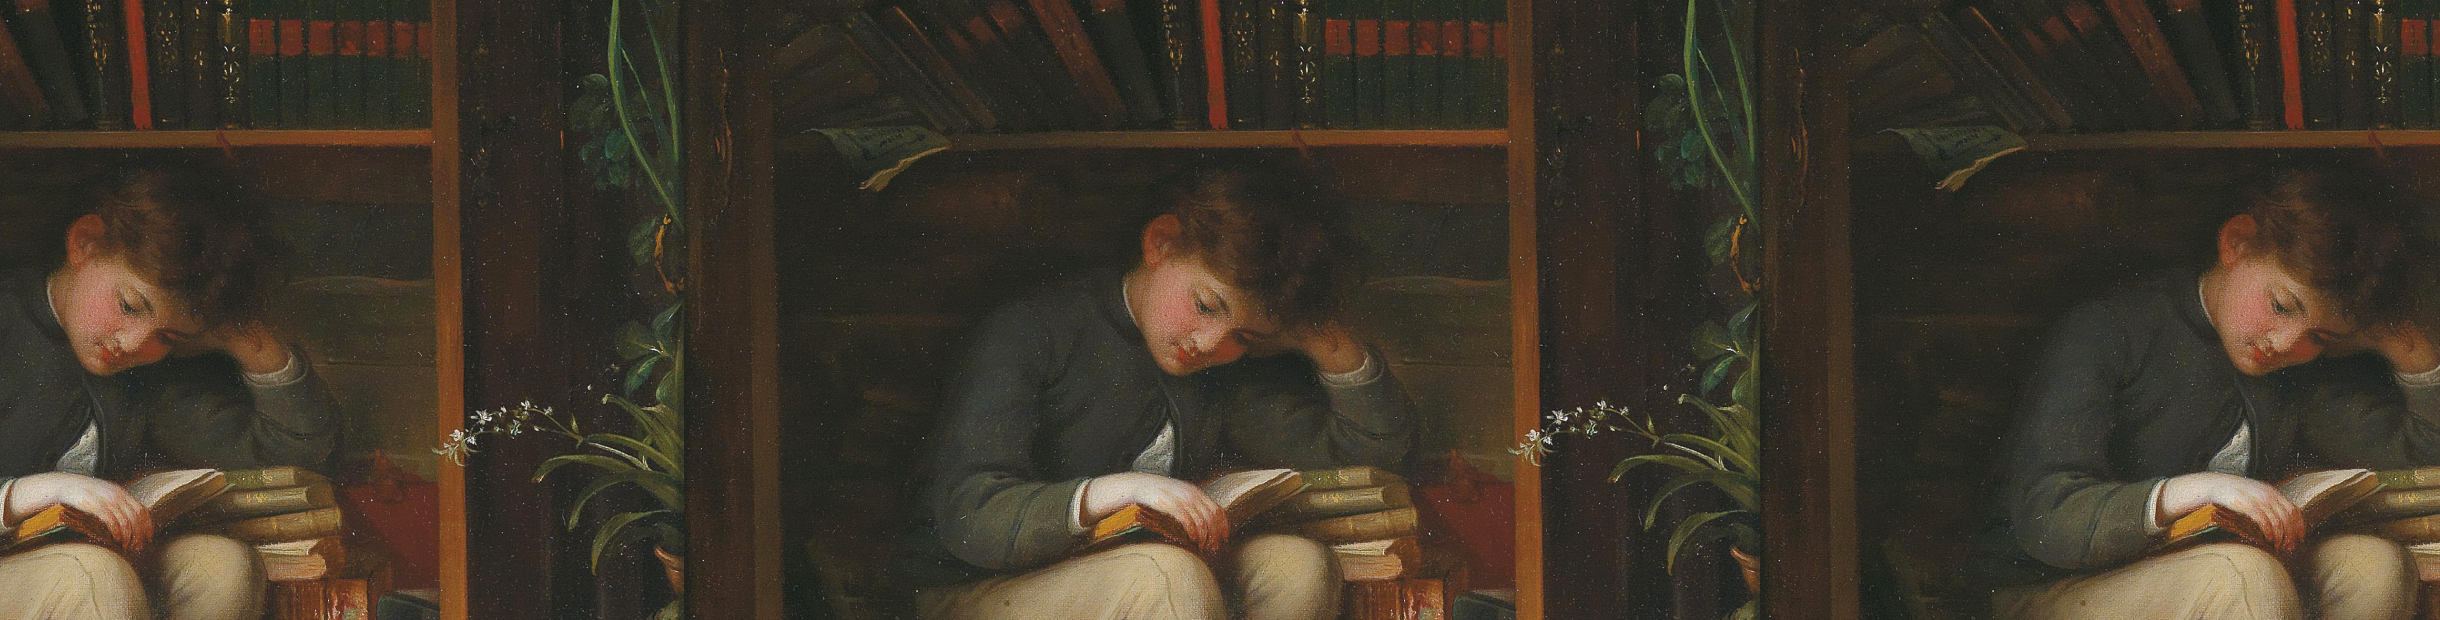 Какие энциклопедии вы читали в детстве?